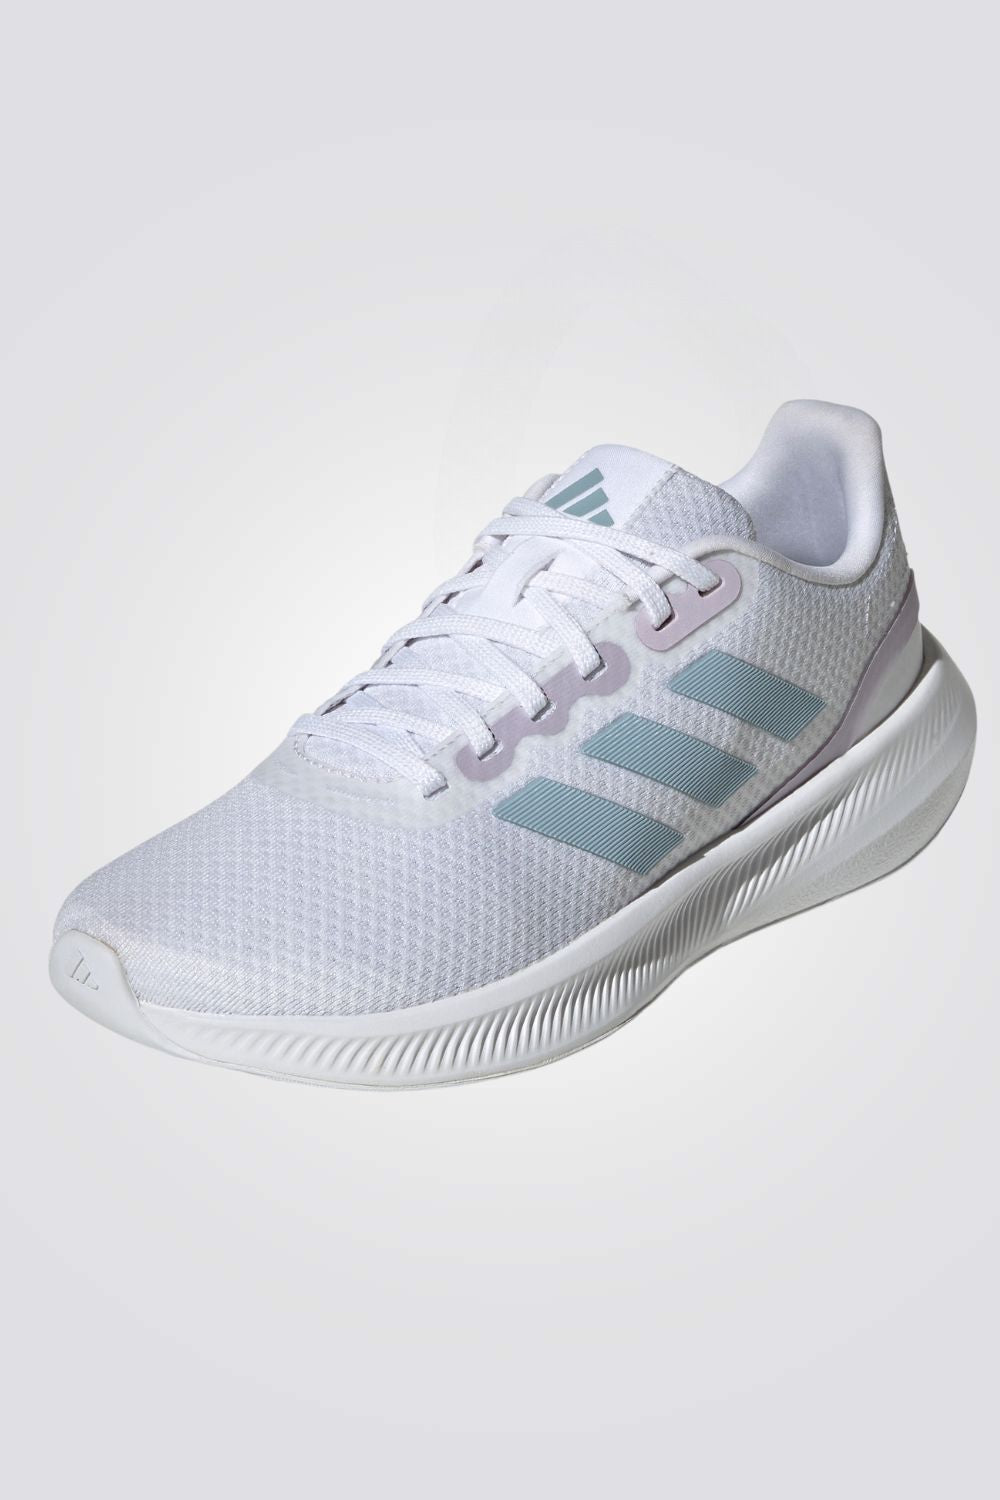 נעלי ספורט לנשים RUNFALCON 3.0 בצבע לבן ותכלת